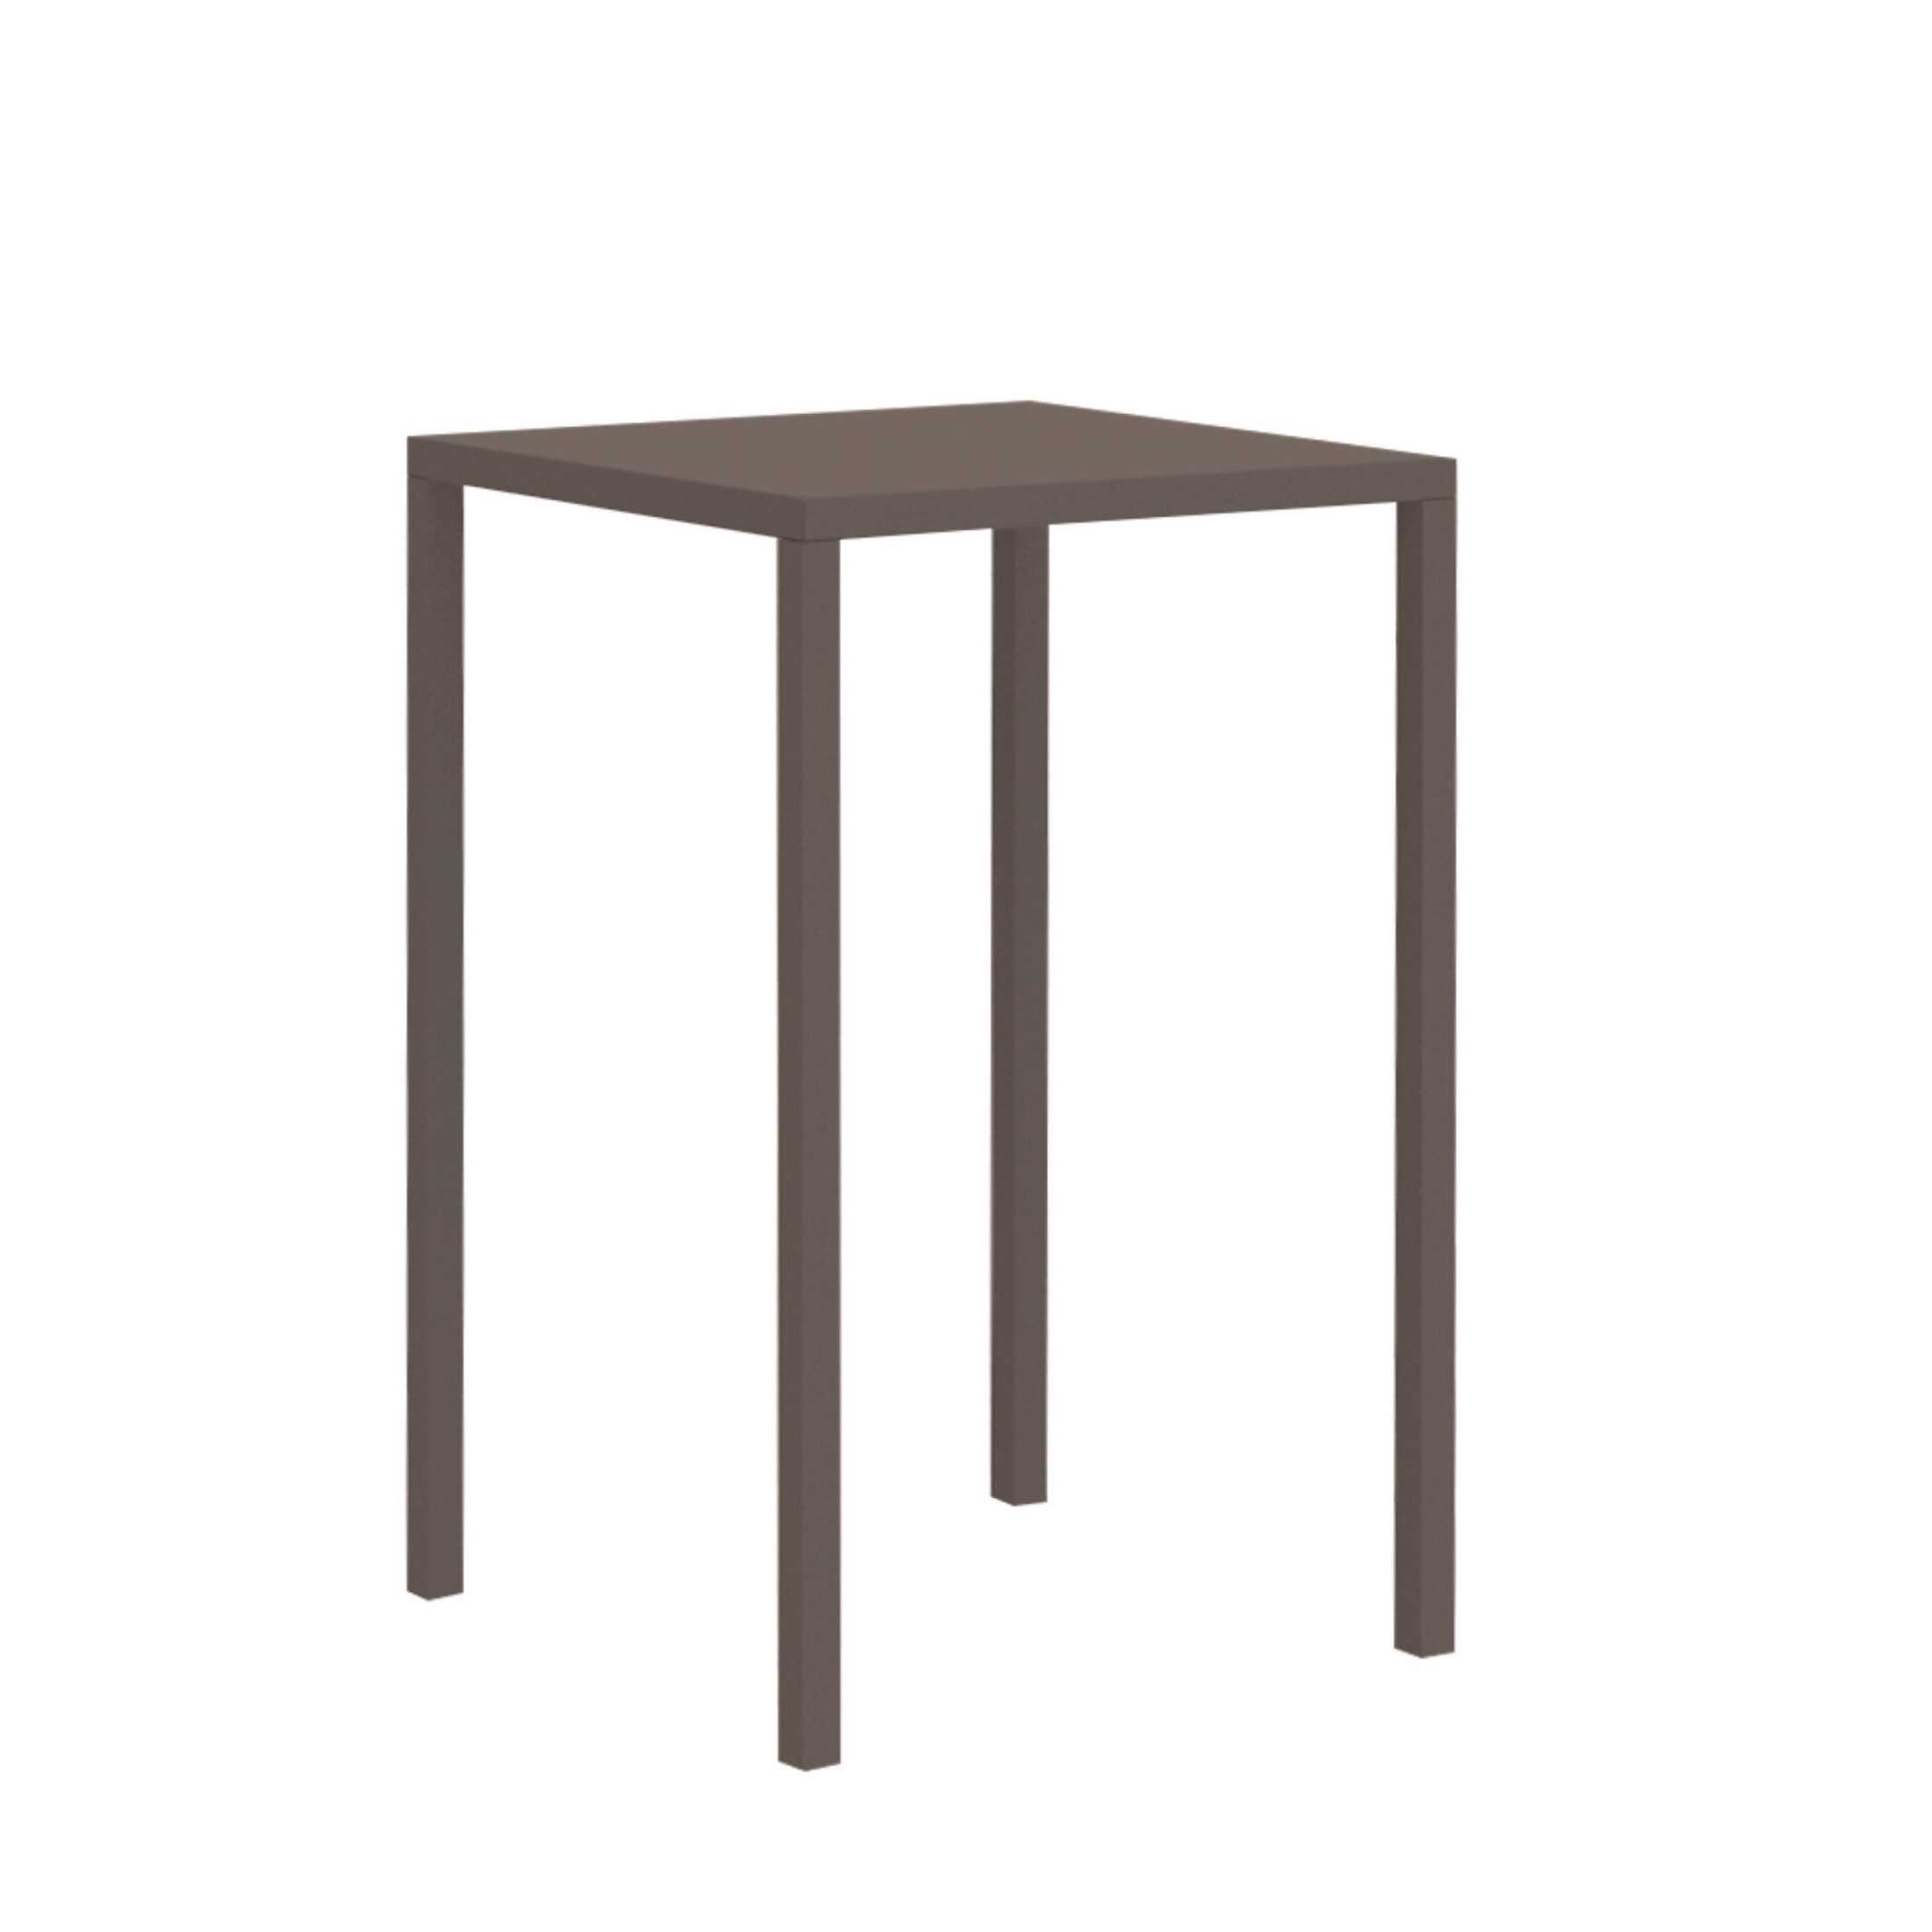 Tavolo alto quadrato in metallo verniciato "Quatris" da giardino moderno